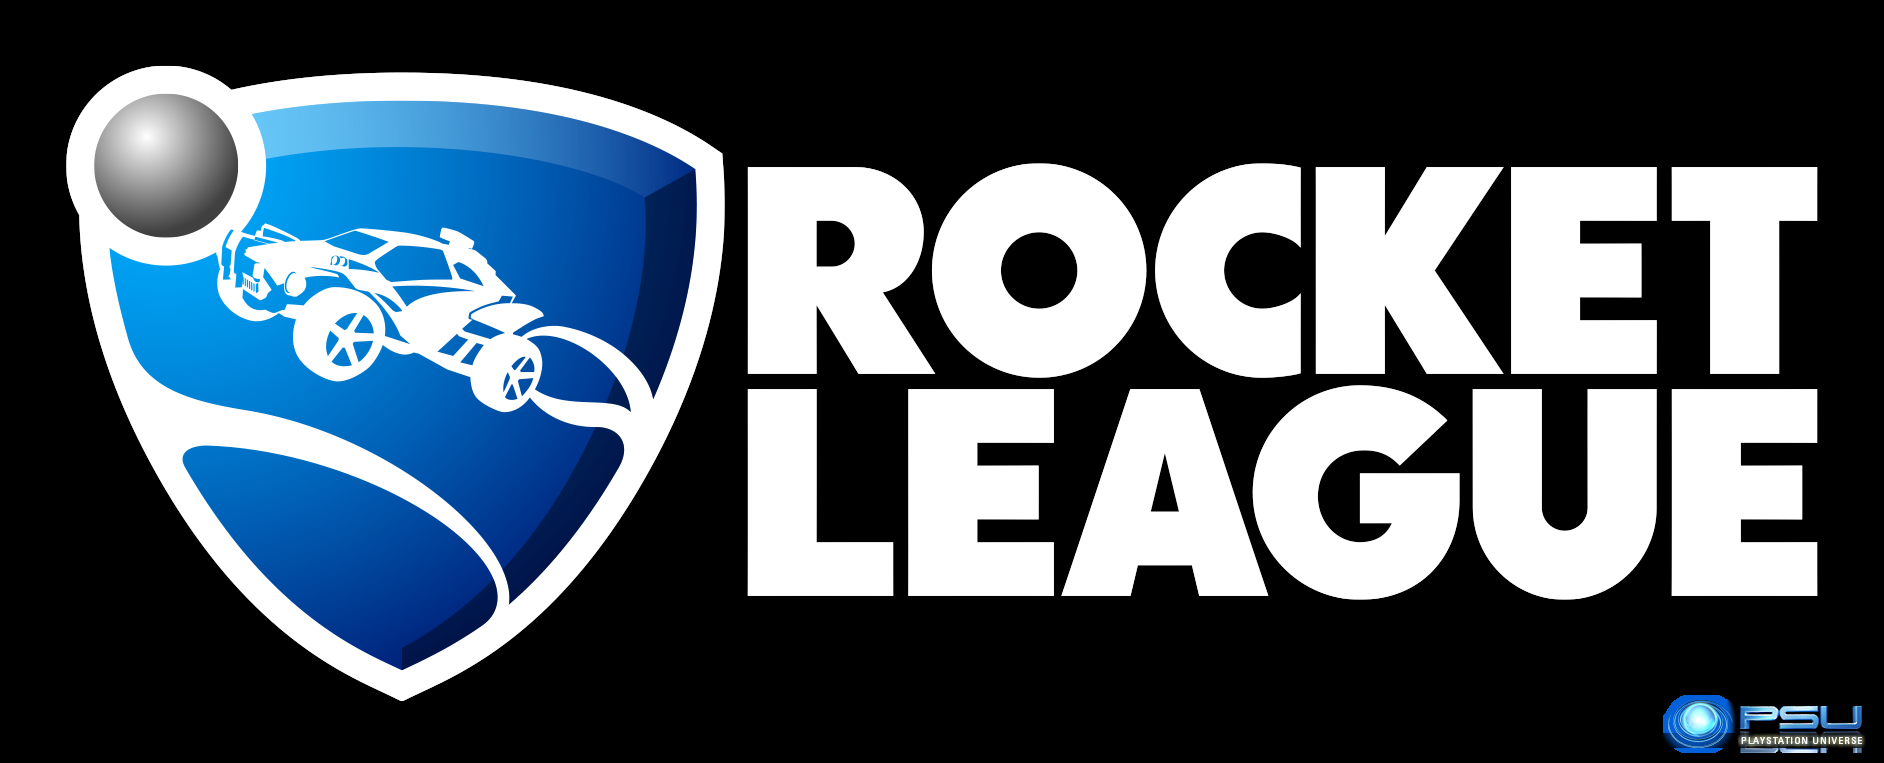 2d rocket league logo funhaus